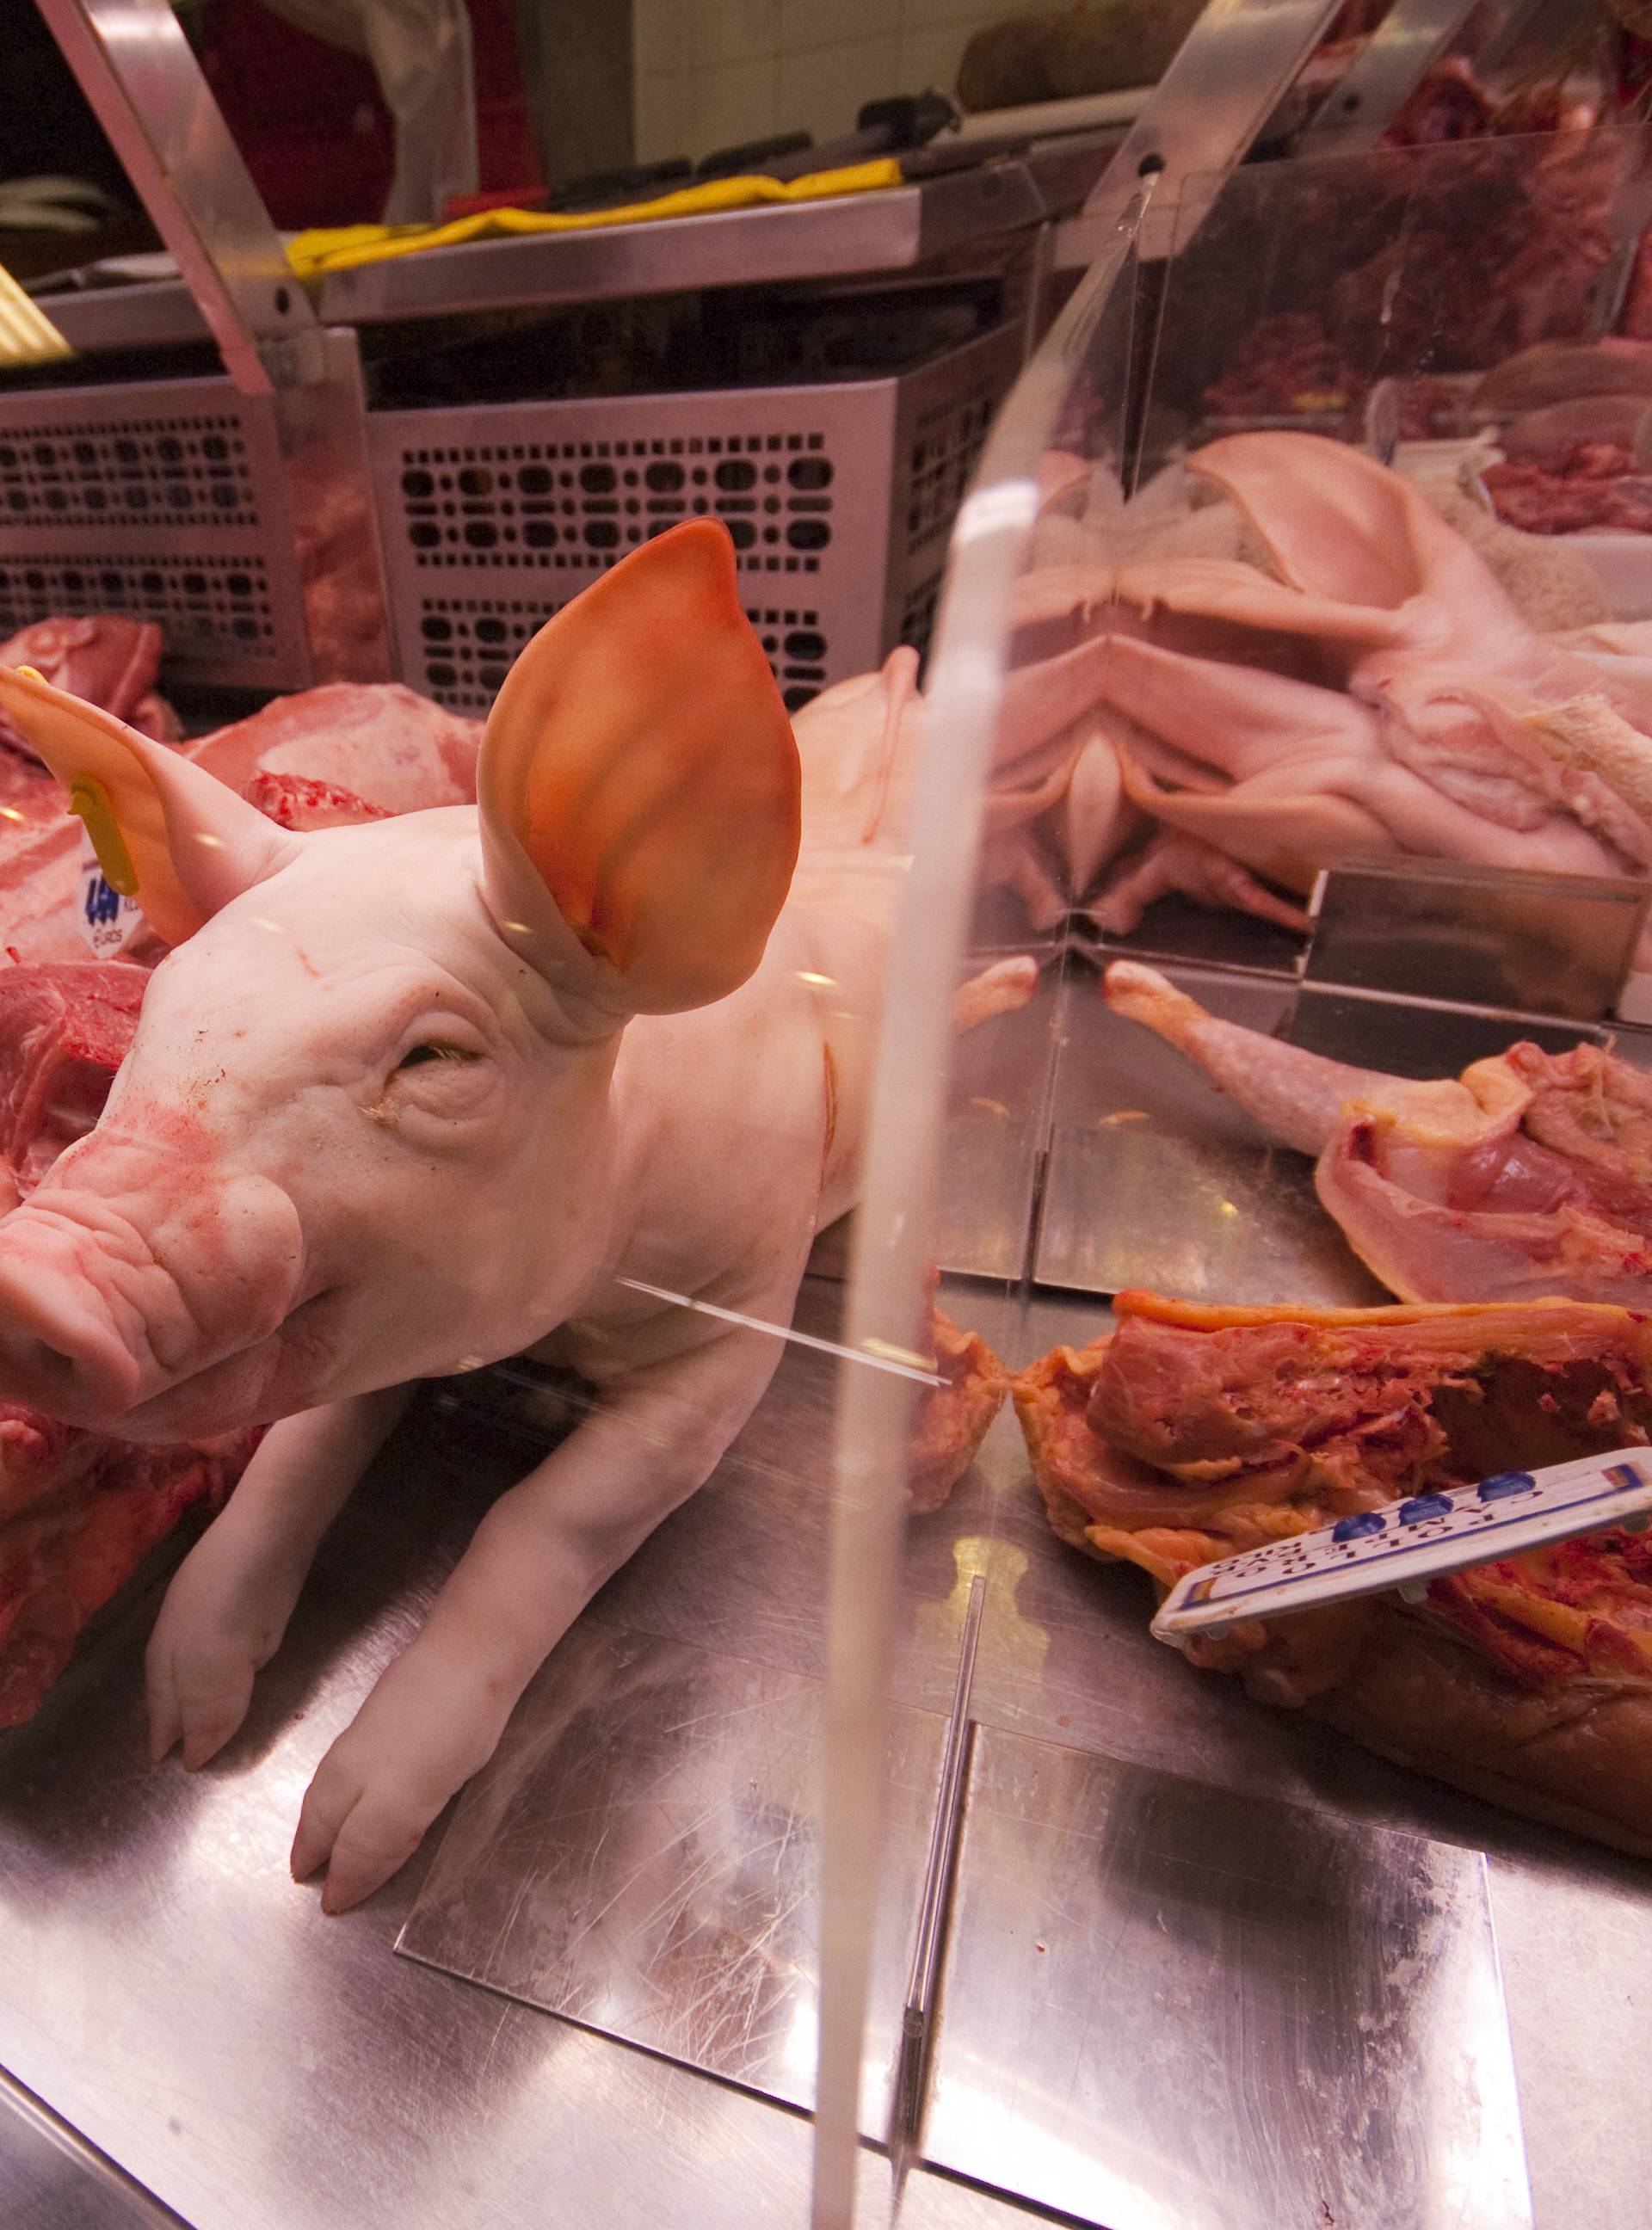 Platit će 'siću': Najveća kazna za meso seže do 100.000 kuna